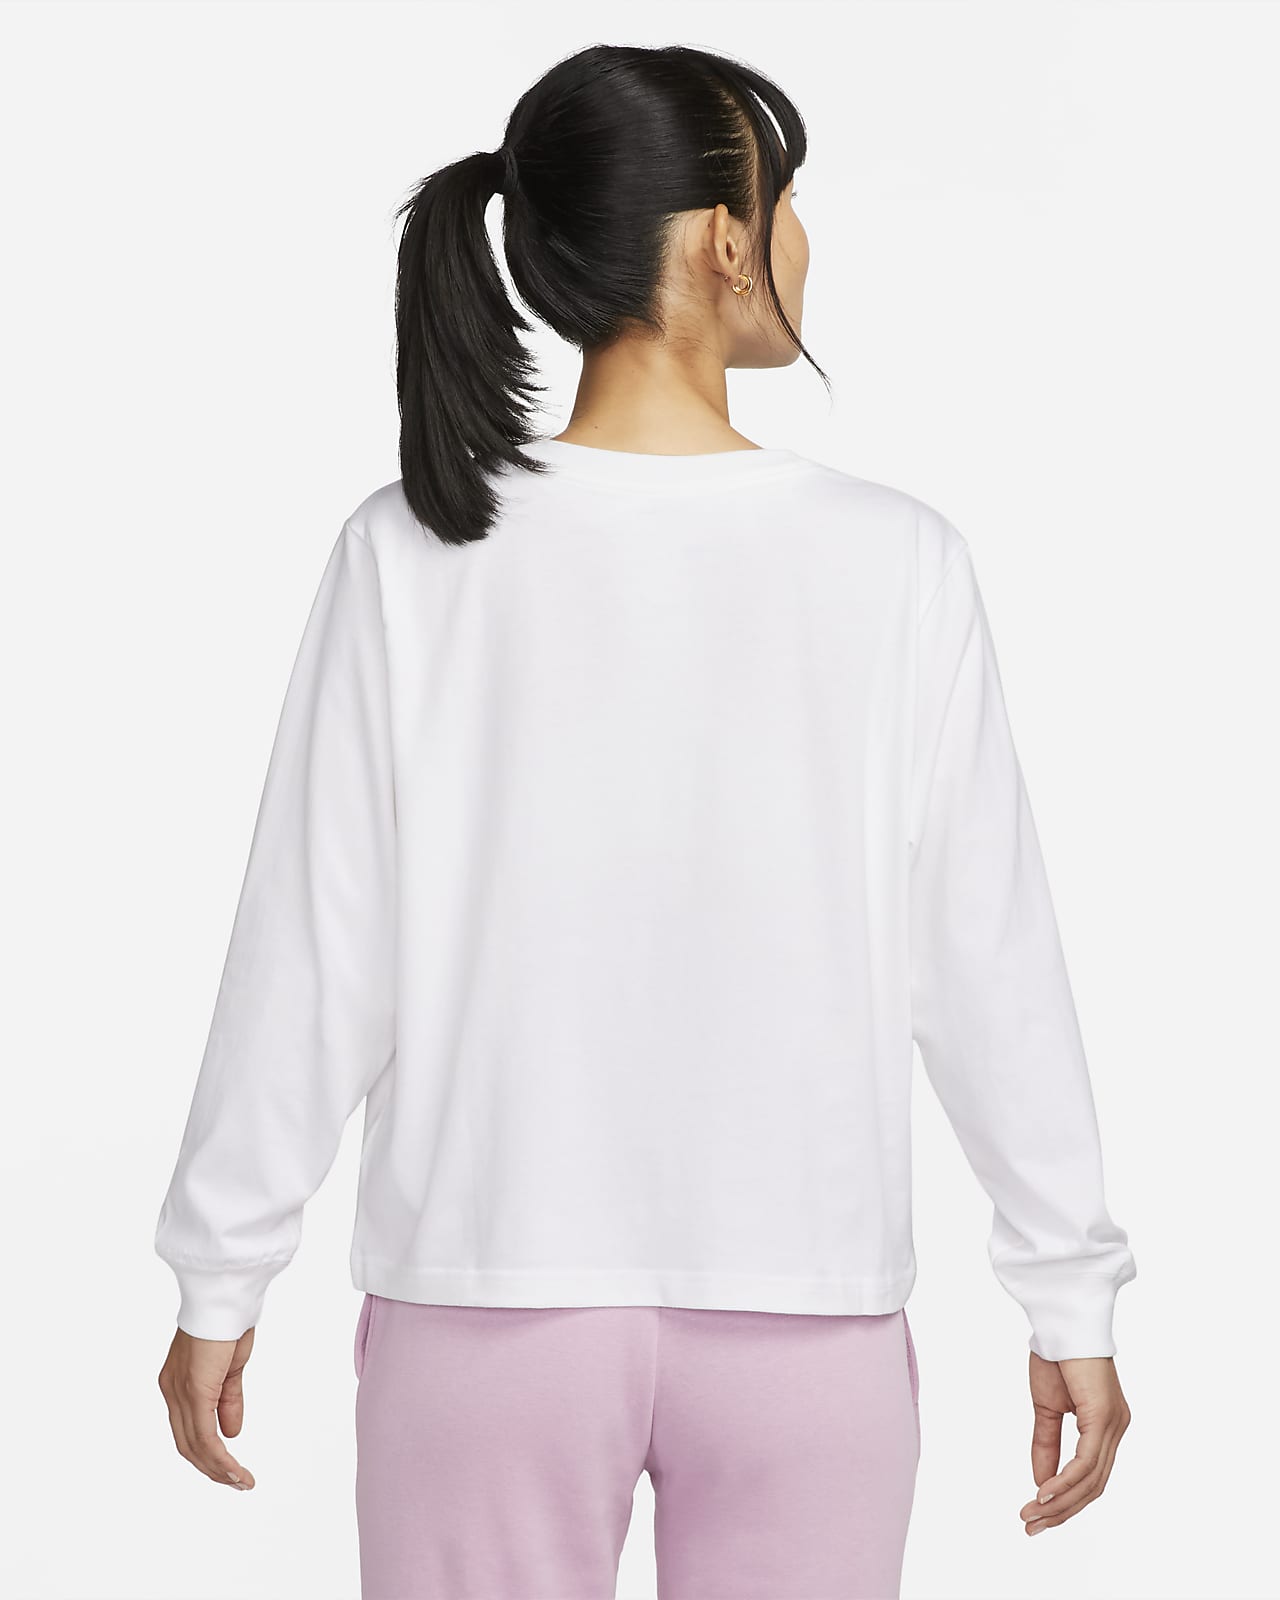 나이키 스포츠웨어 여성 긴팔 티셔츠. 나이키 코리아